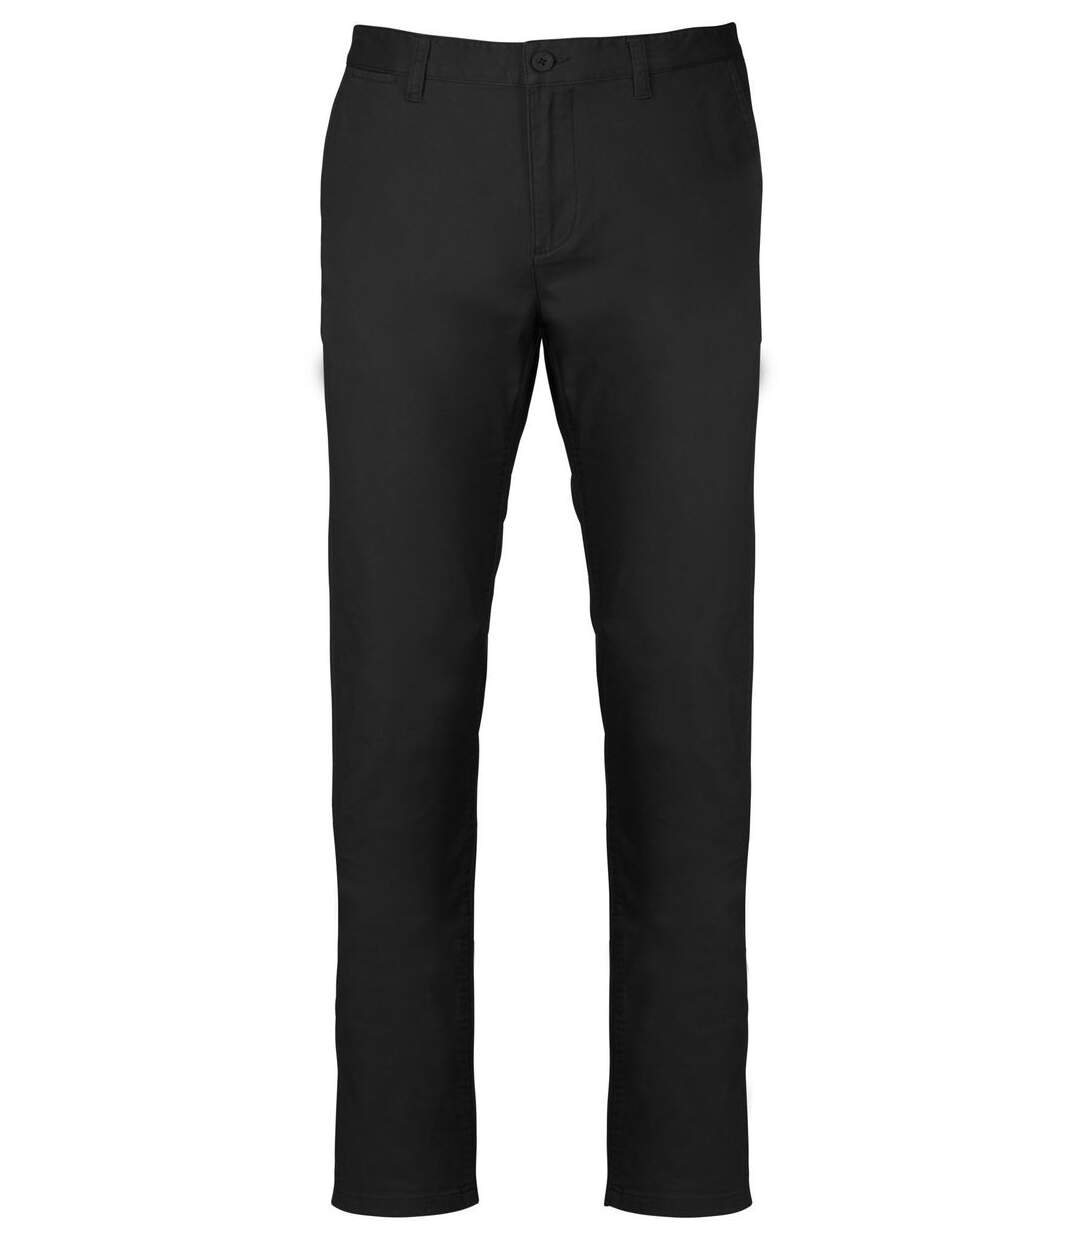 pantalon chino pour homme - K740 - noir